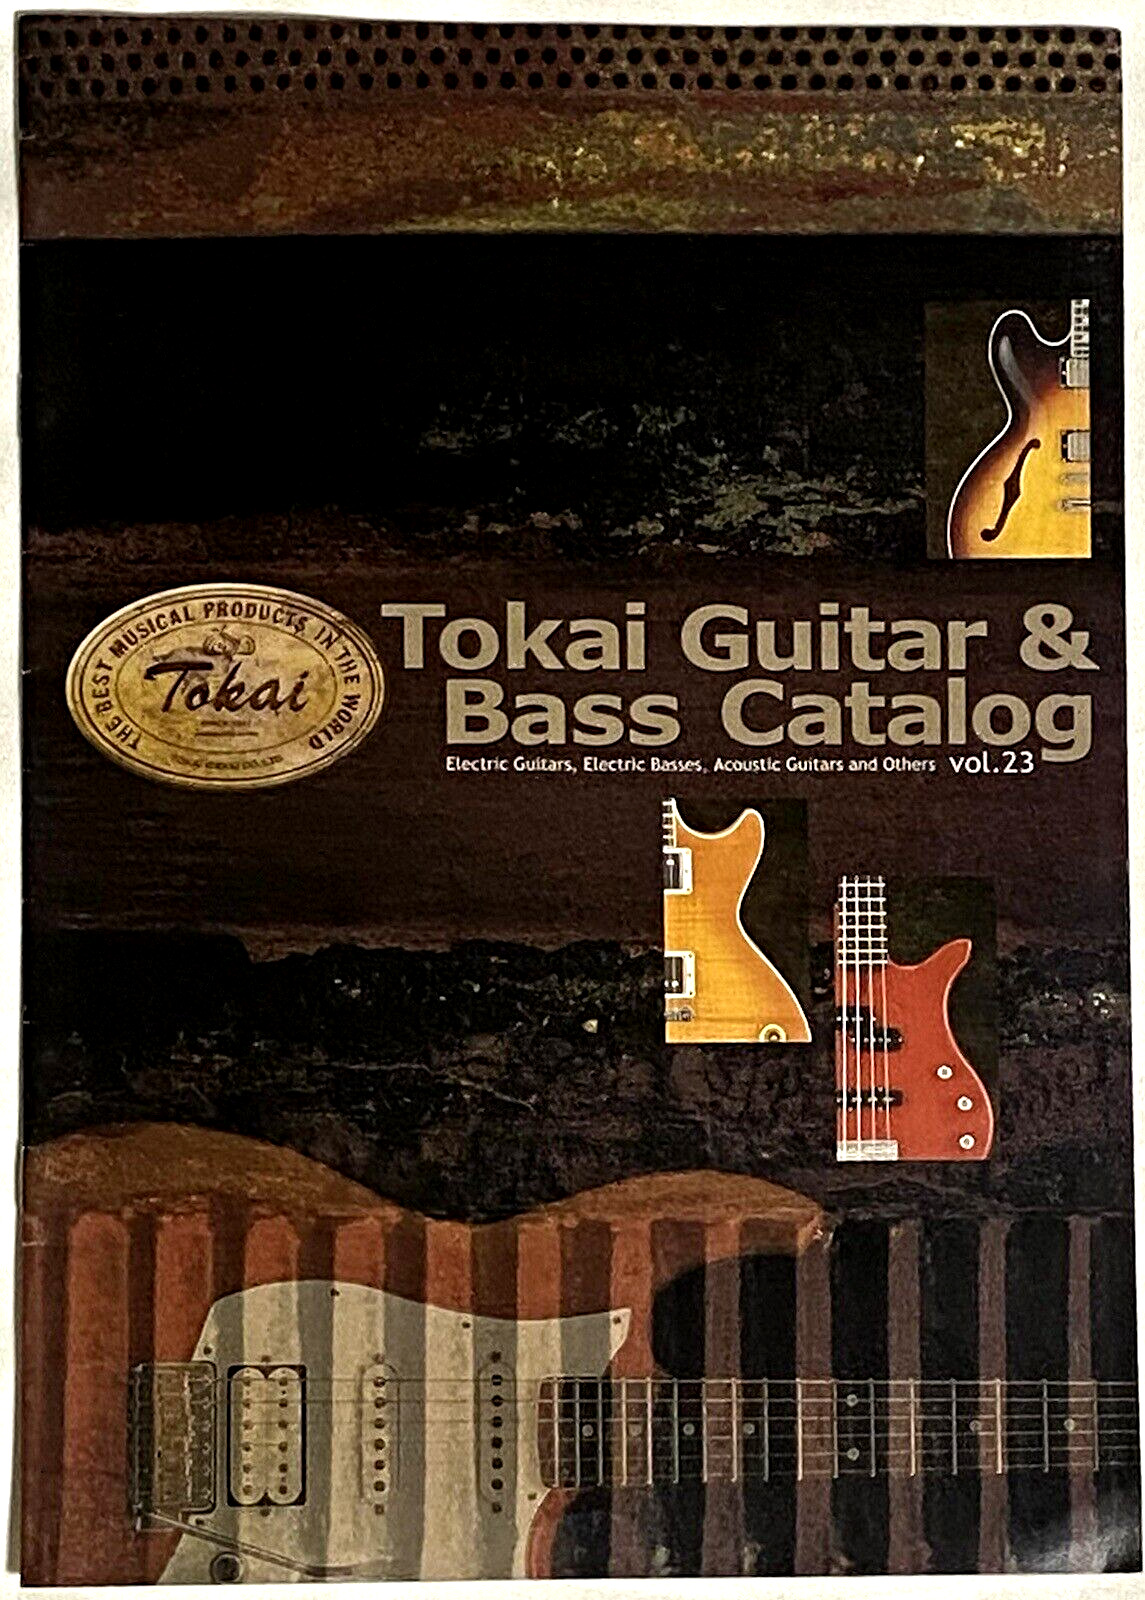 2005 Tokai Guitar & Base Catalog vol.23 Japan Vintage Rare